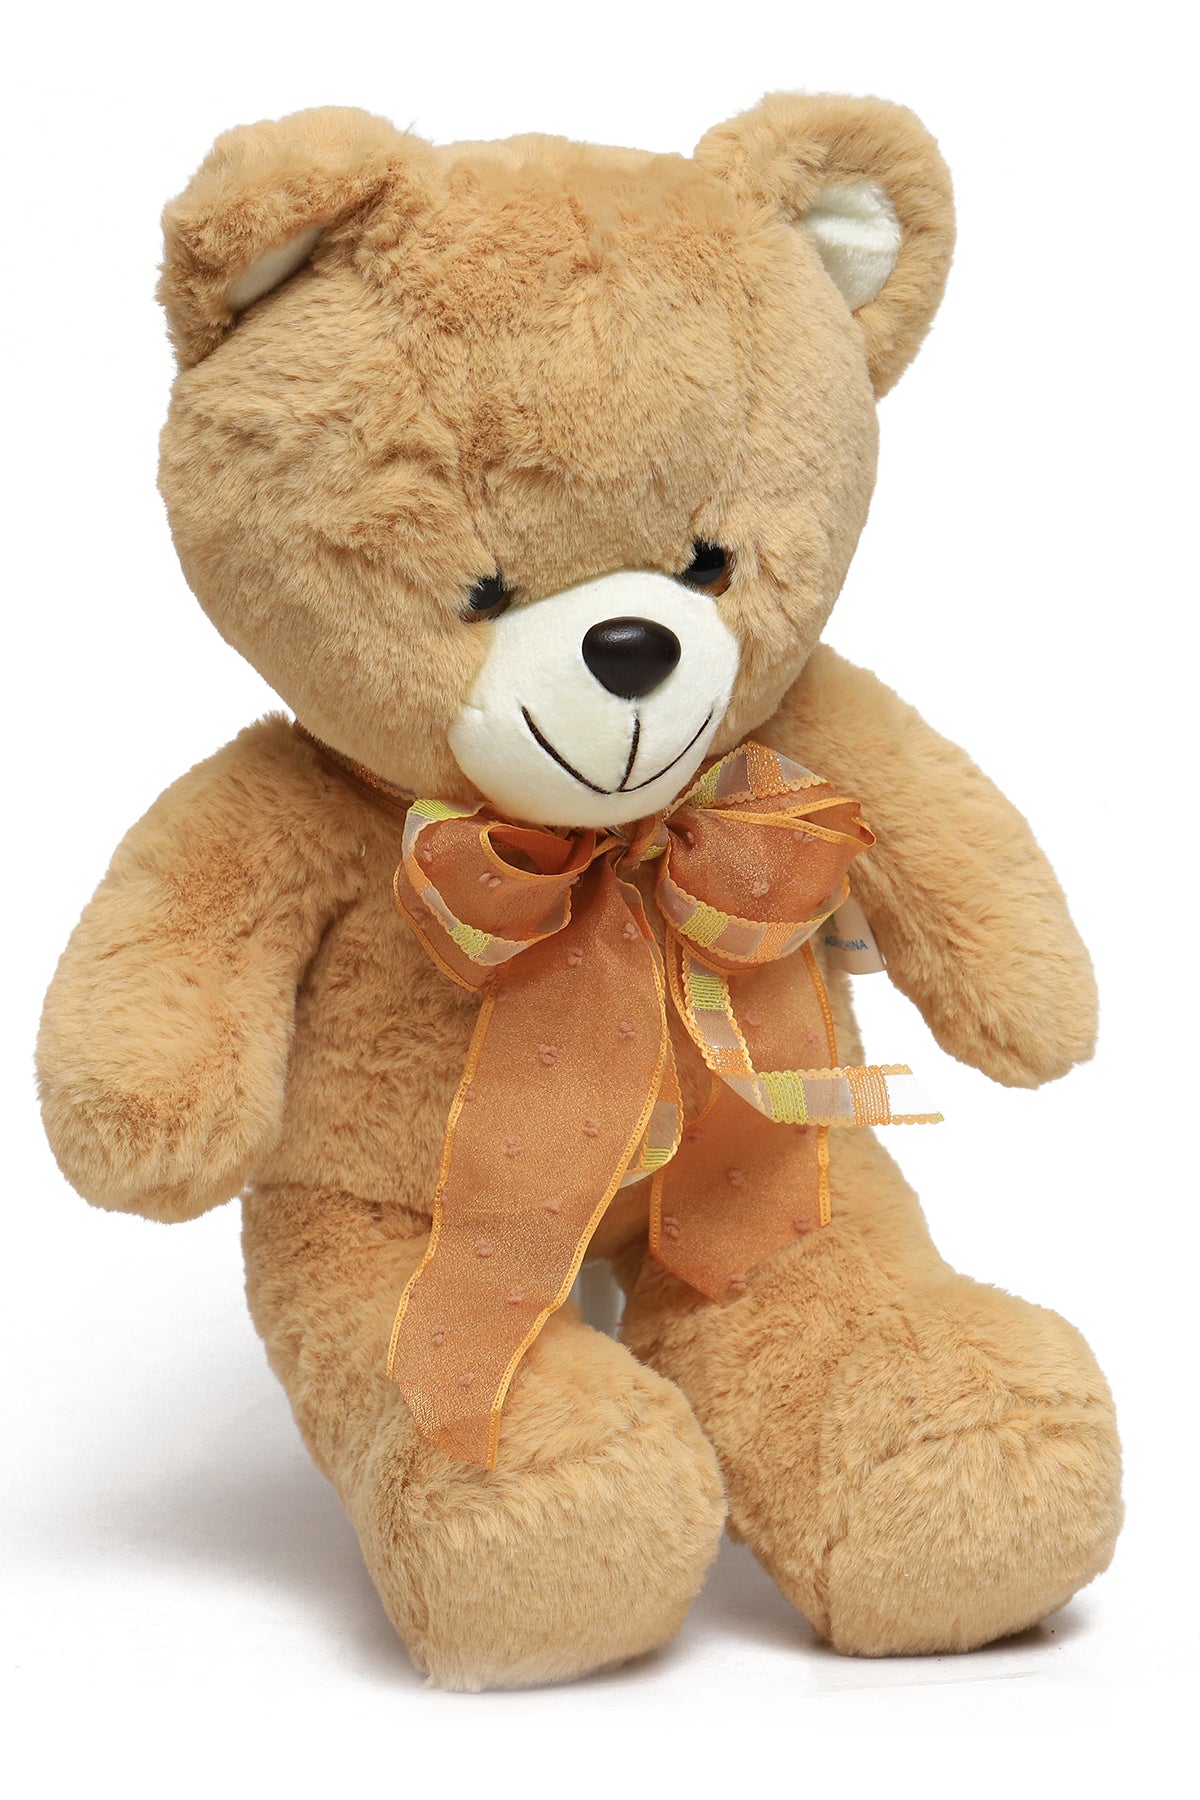 Stuffed Soft Teddy Bear Toy